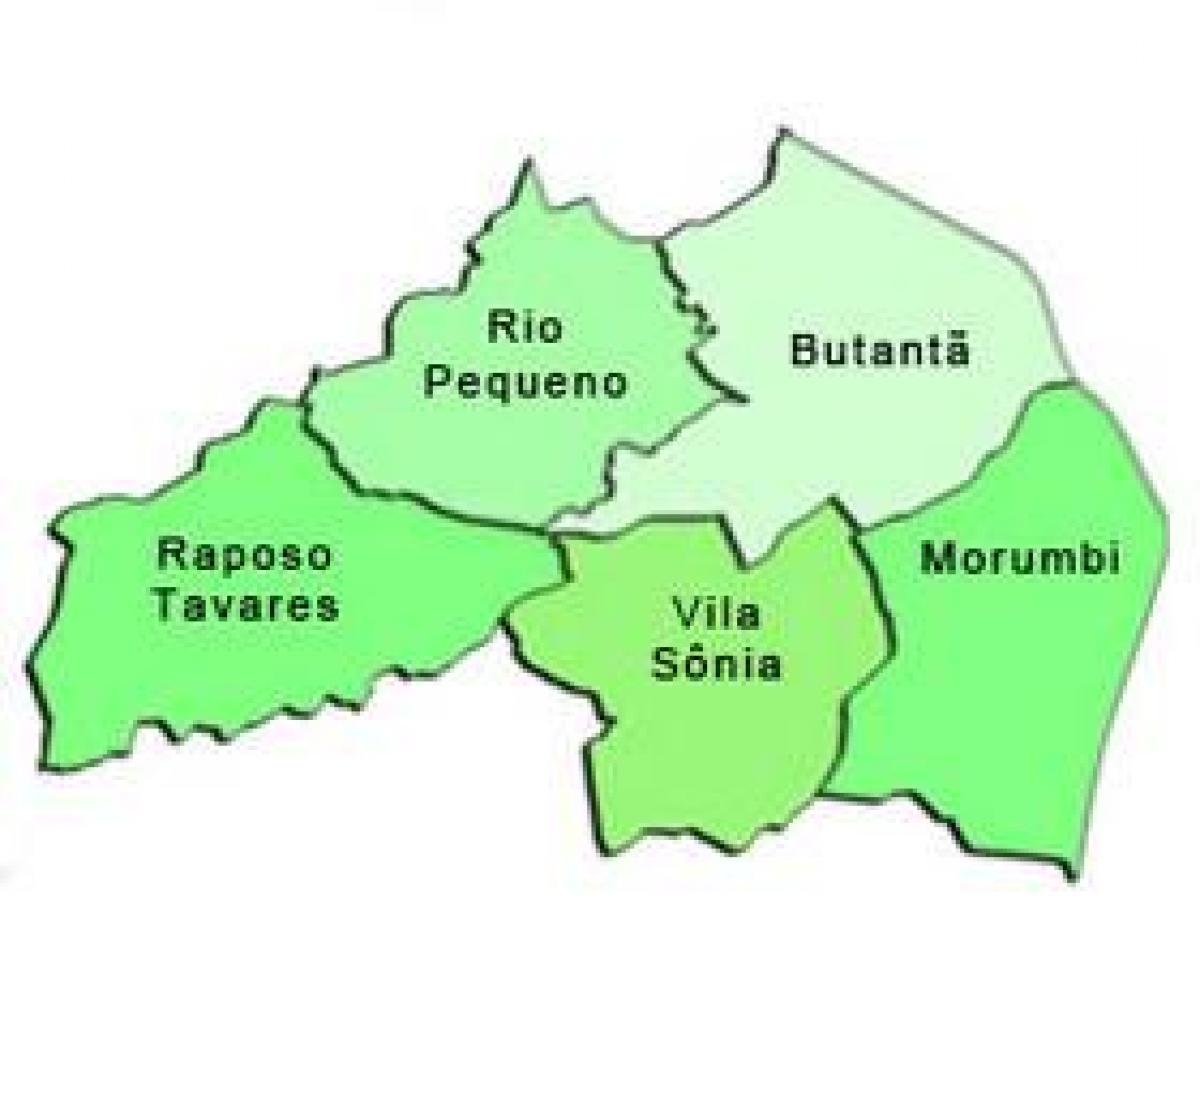 Mapa do Butantã, sub-prefeitura